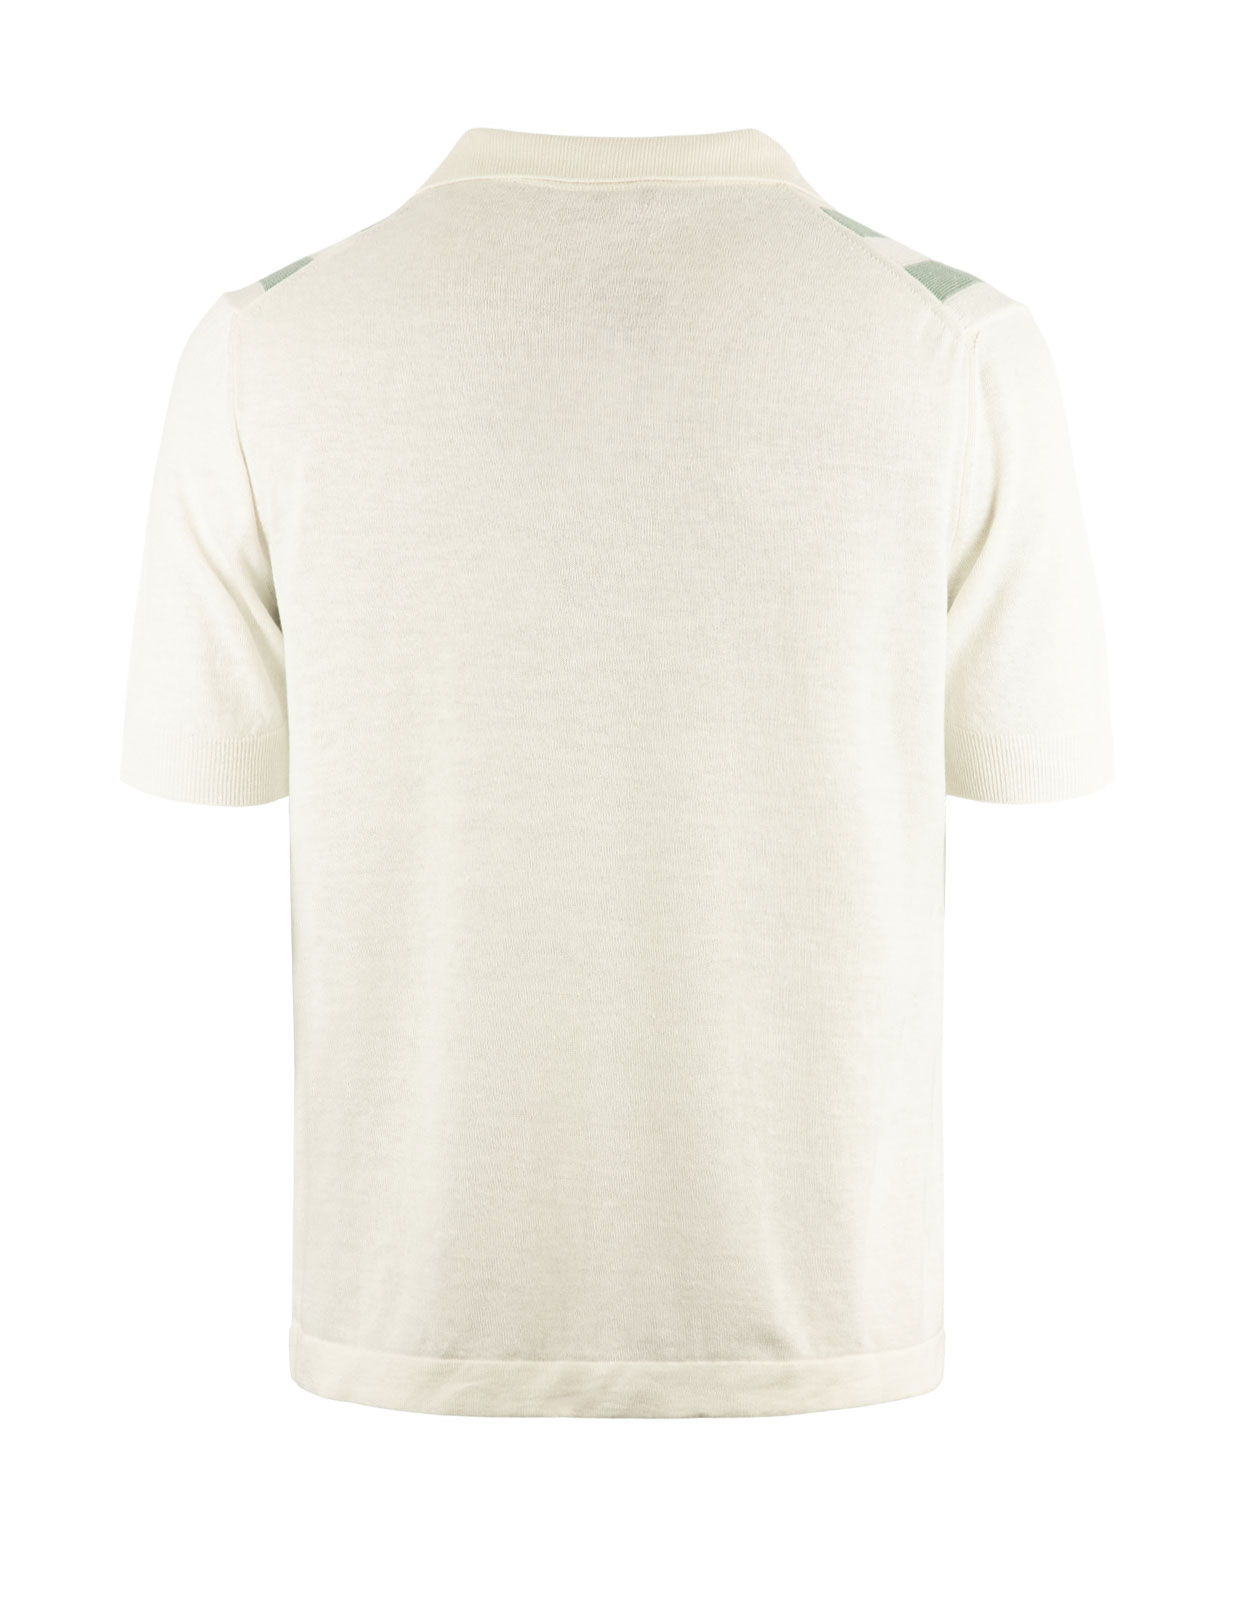 Bowlingskjorta Stickad Kortärmad Vit/Grå/Grön Stl L